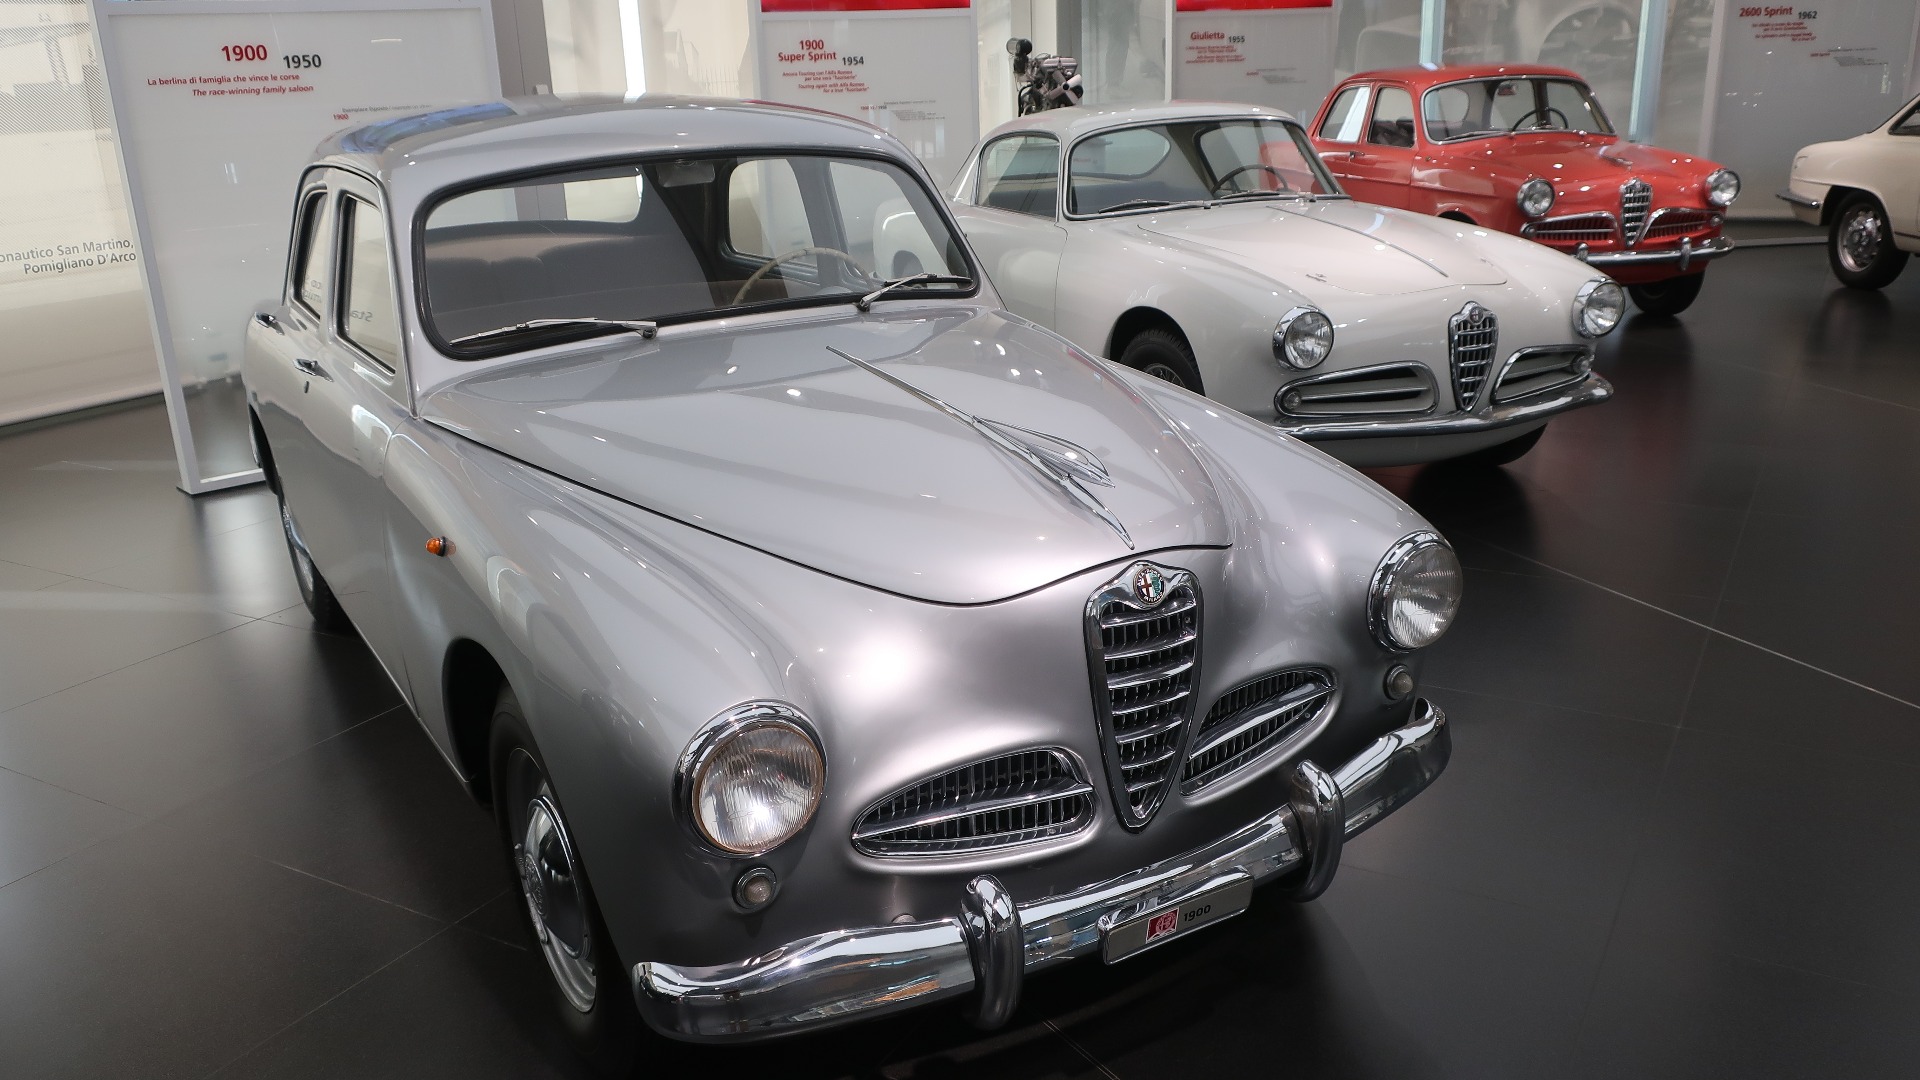 Tre trivelige Alfaer fra femtitallet, i form av en 1900 fra 1950, en 1900 Super Sprint fra 1954 og en Giulietta fra 1955.